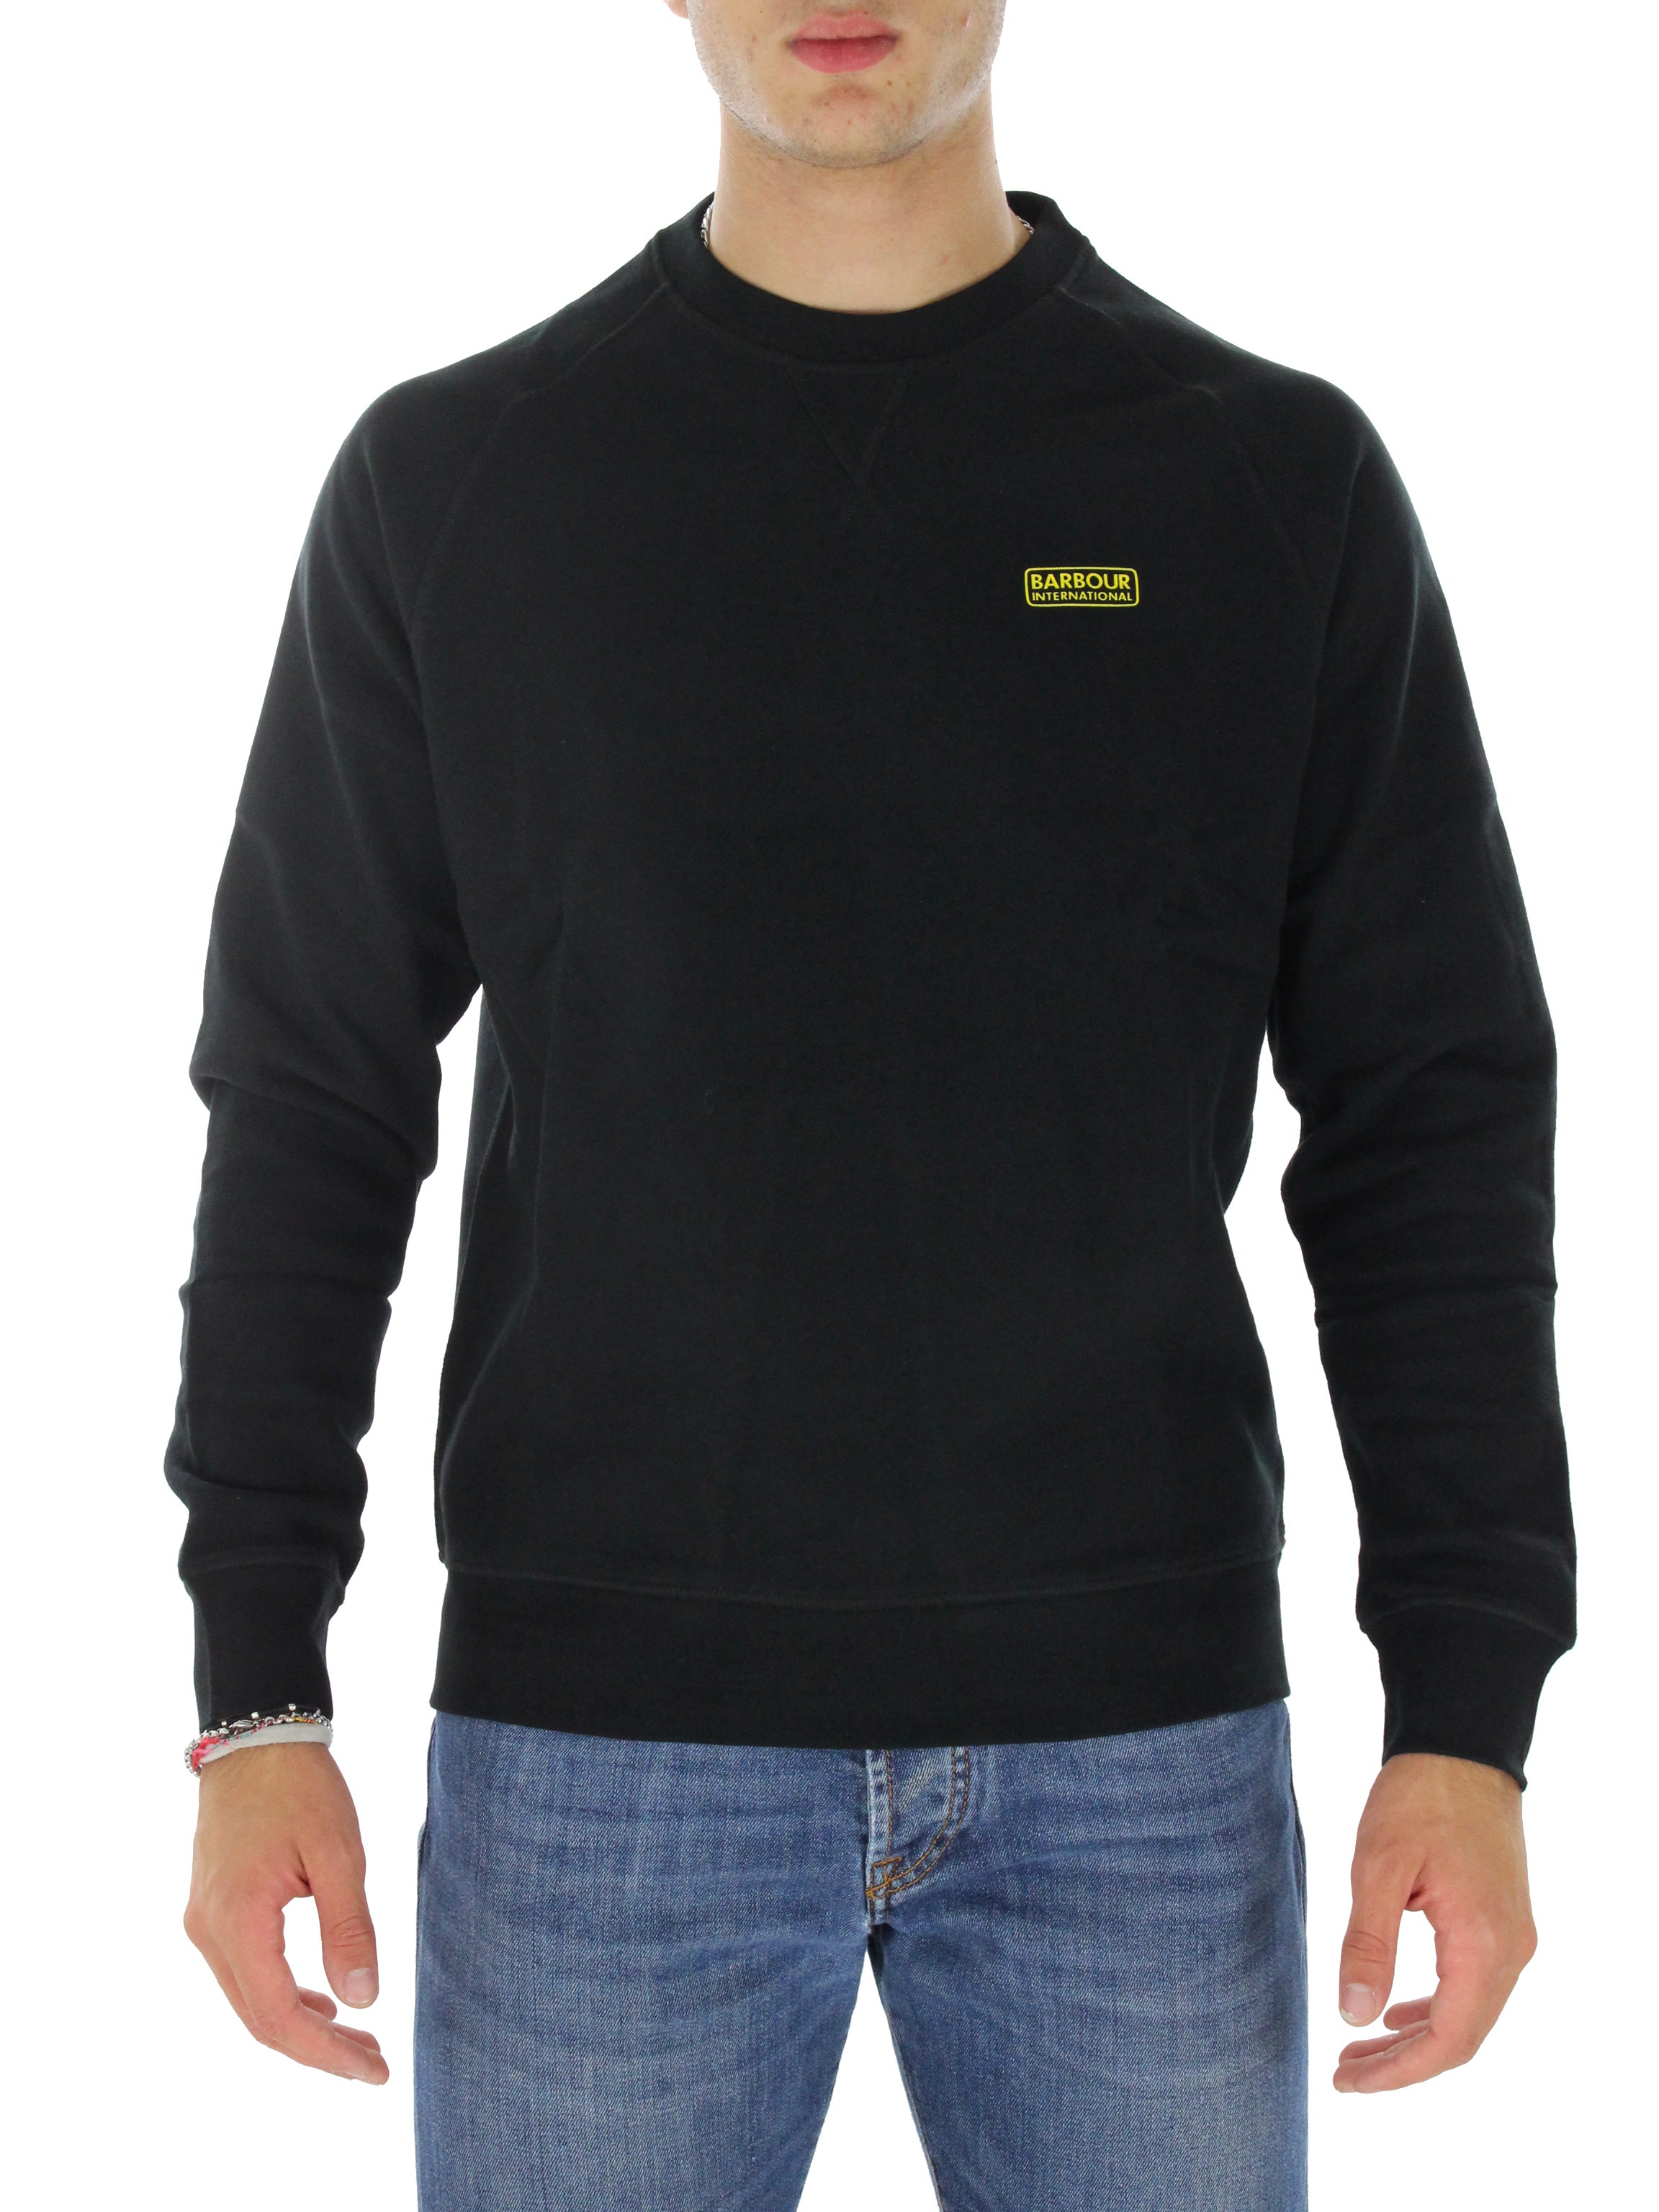 Black mol0088 round neck sweatshirt